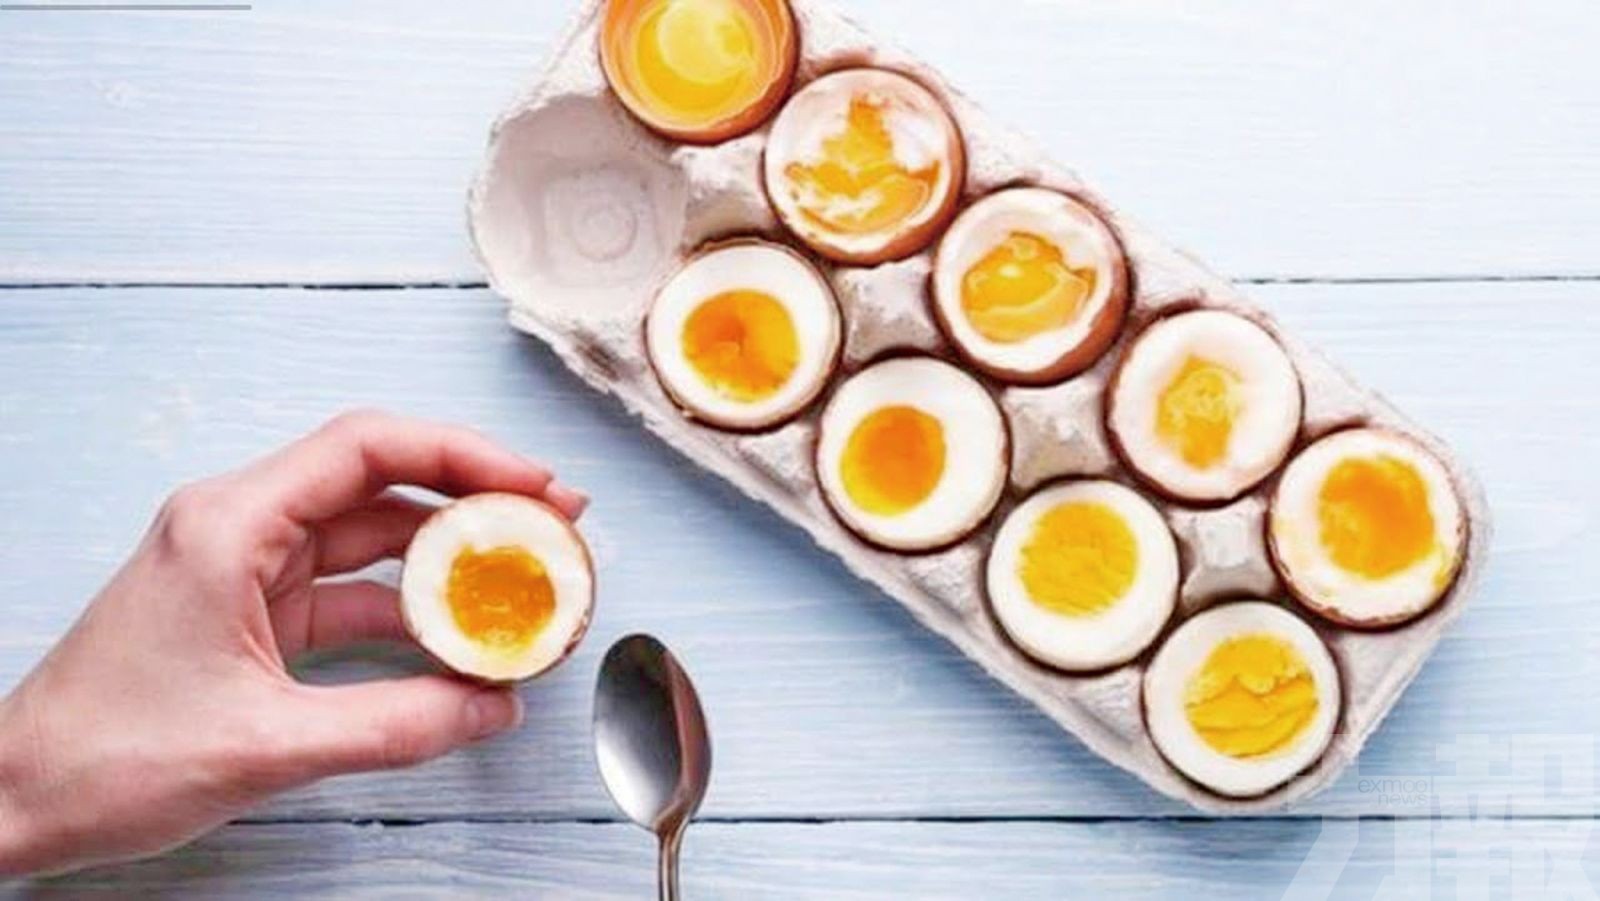 英國人去年扔掉7.2億顆雞蛋